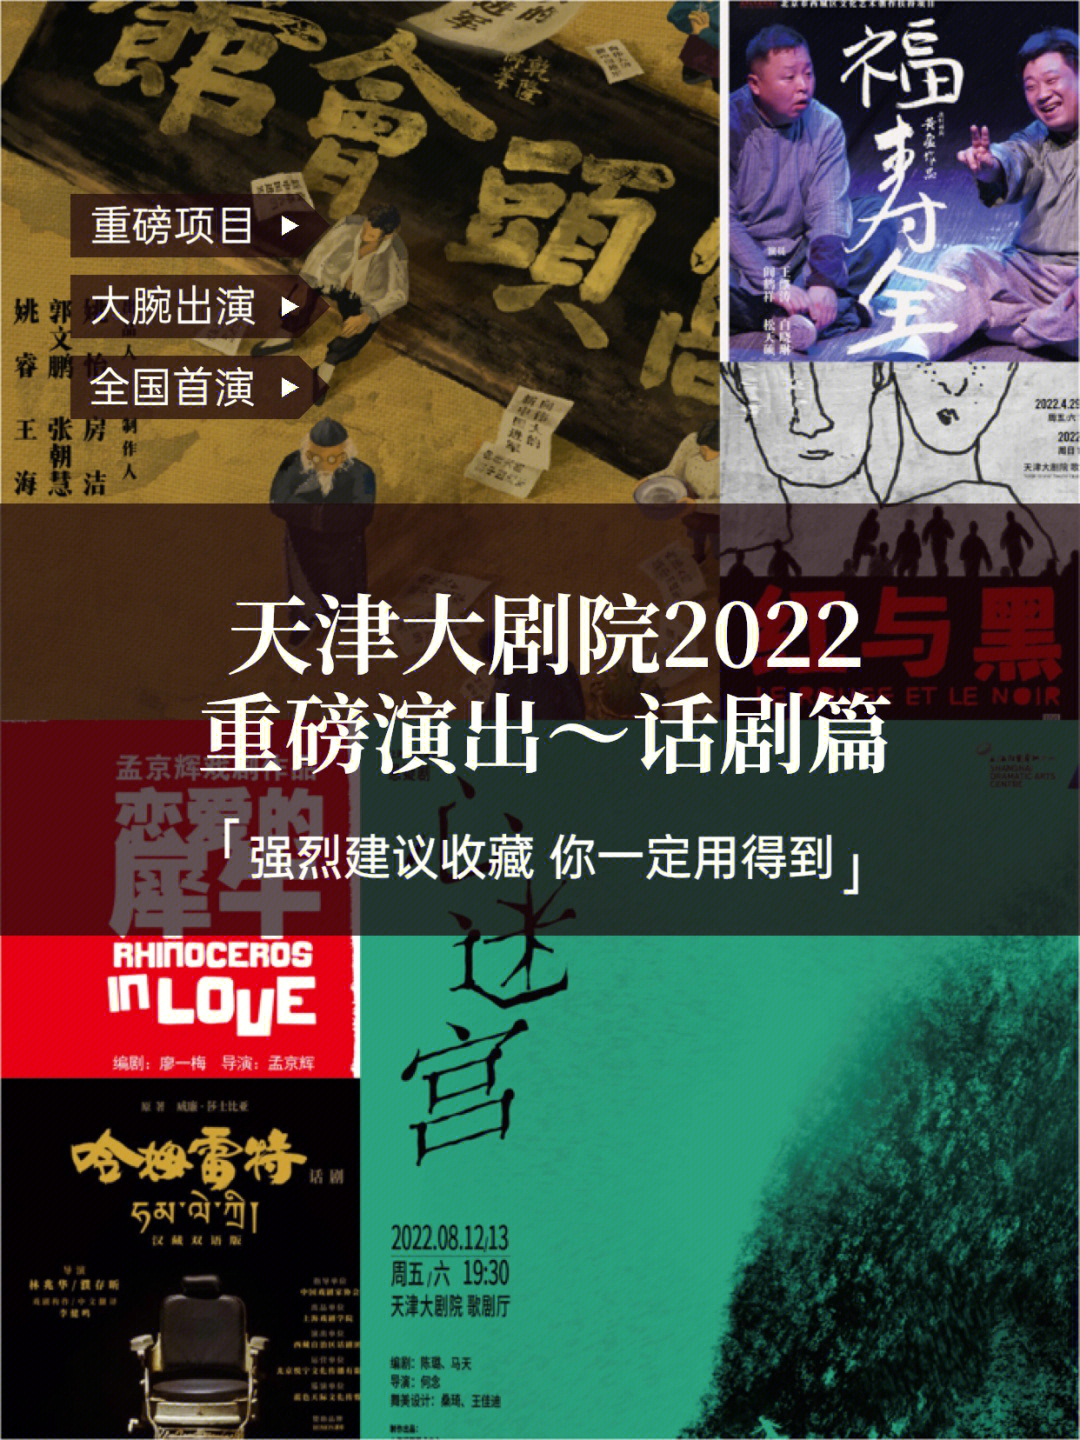 天津大剧院2021演出表图片